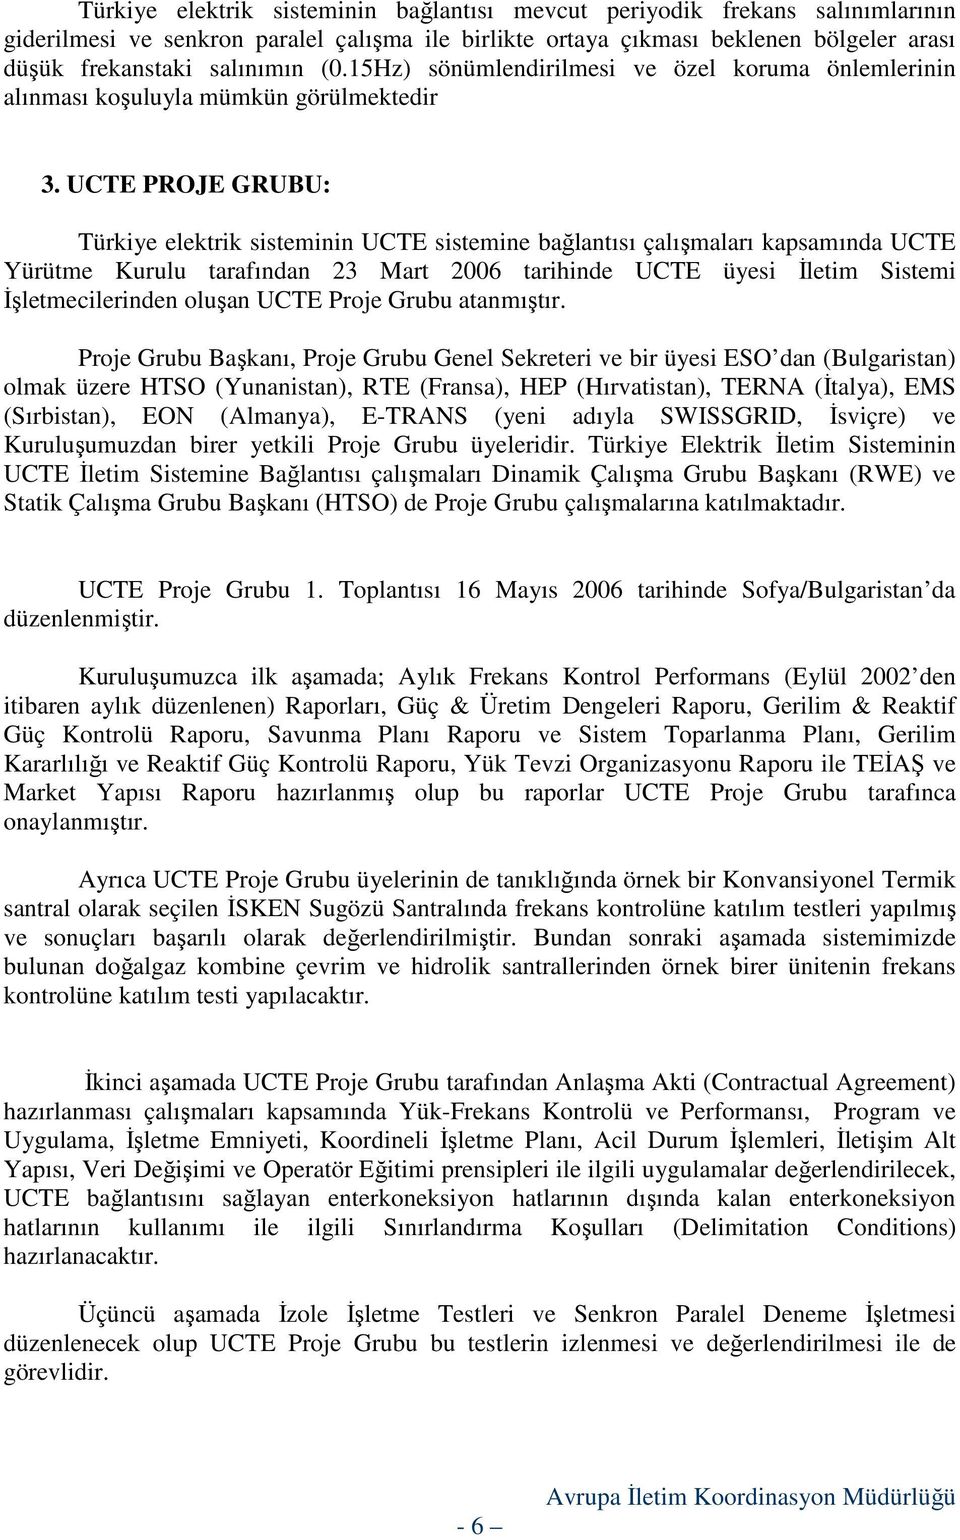 UCTE PROJE GRUBU: Türkiye elektrik sisteminin UCTE sistemine bağlantısı çalışmaları kapsamında UCTE Yürütme Kurulu tarafından 23 Mart 2006 tarihinde UCTE üyesi Đletim Sistemi Đşletmecilerinden oluşan